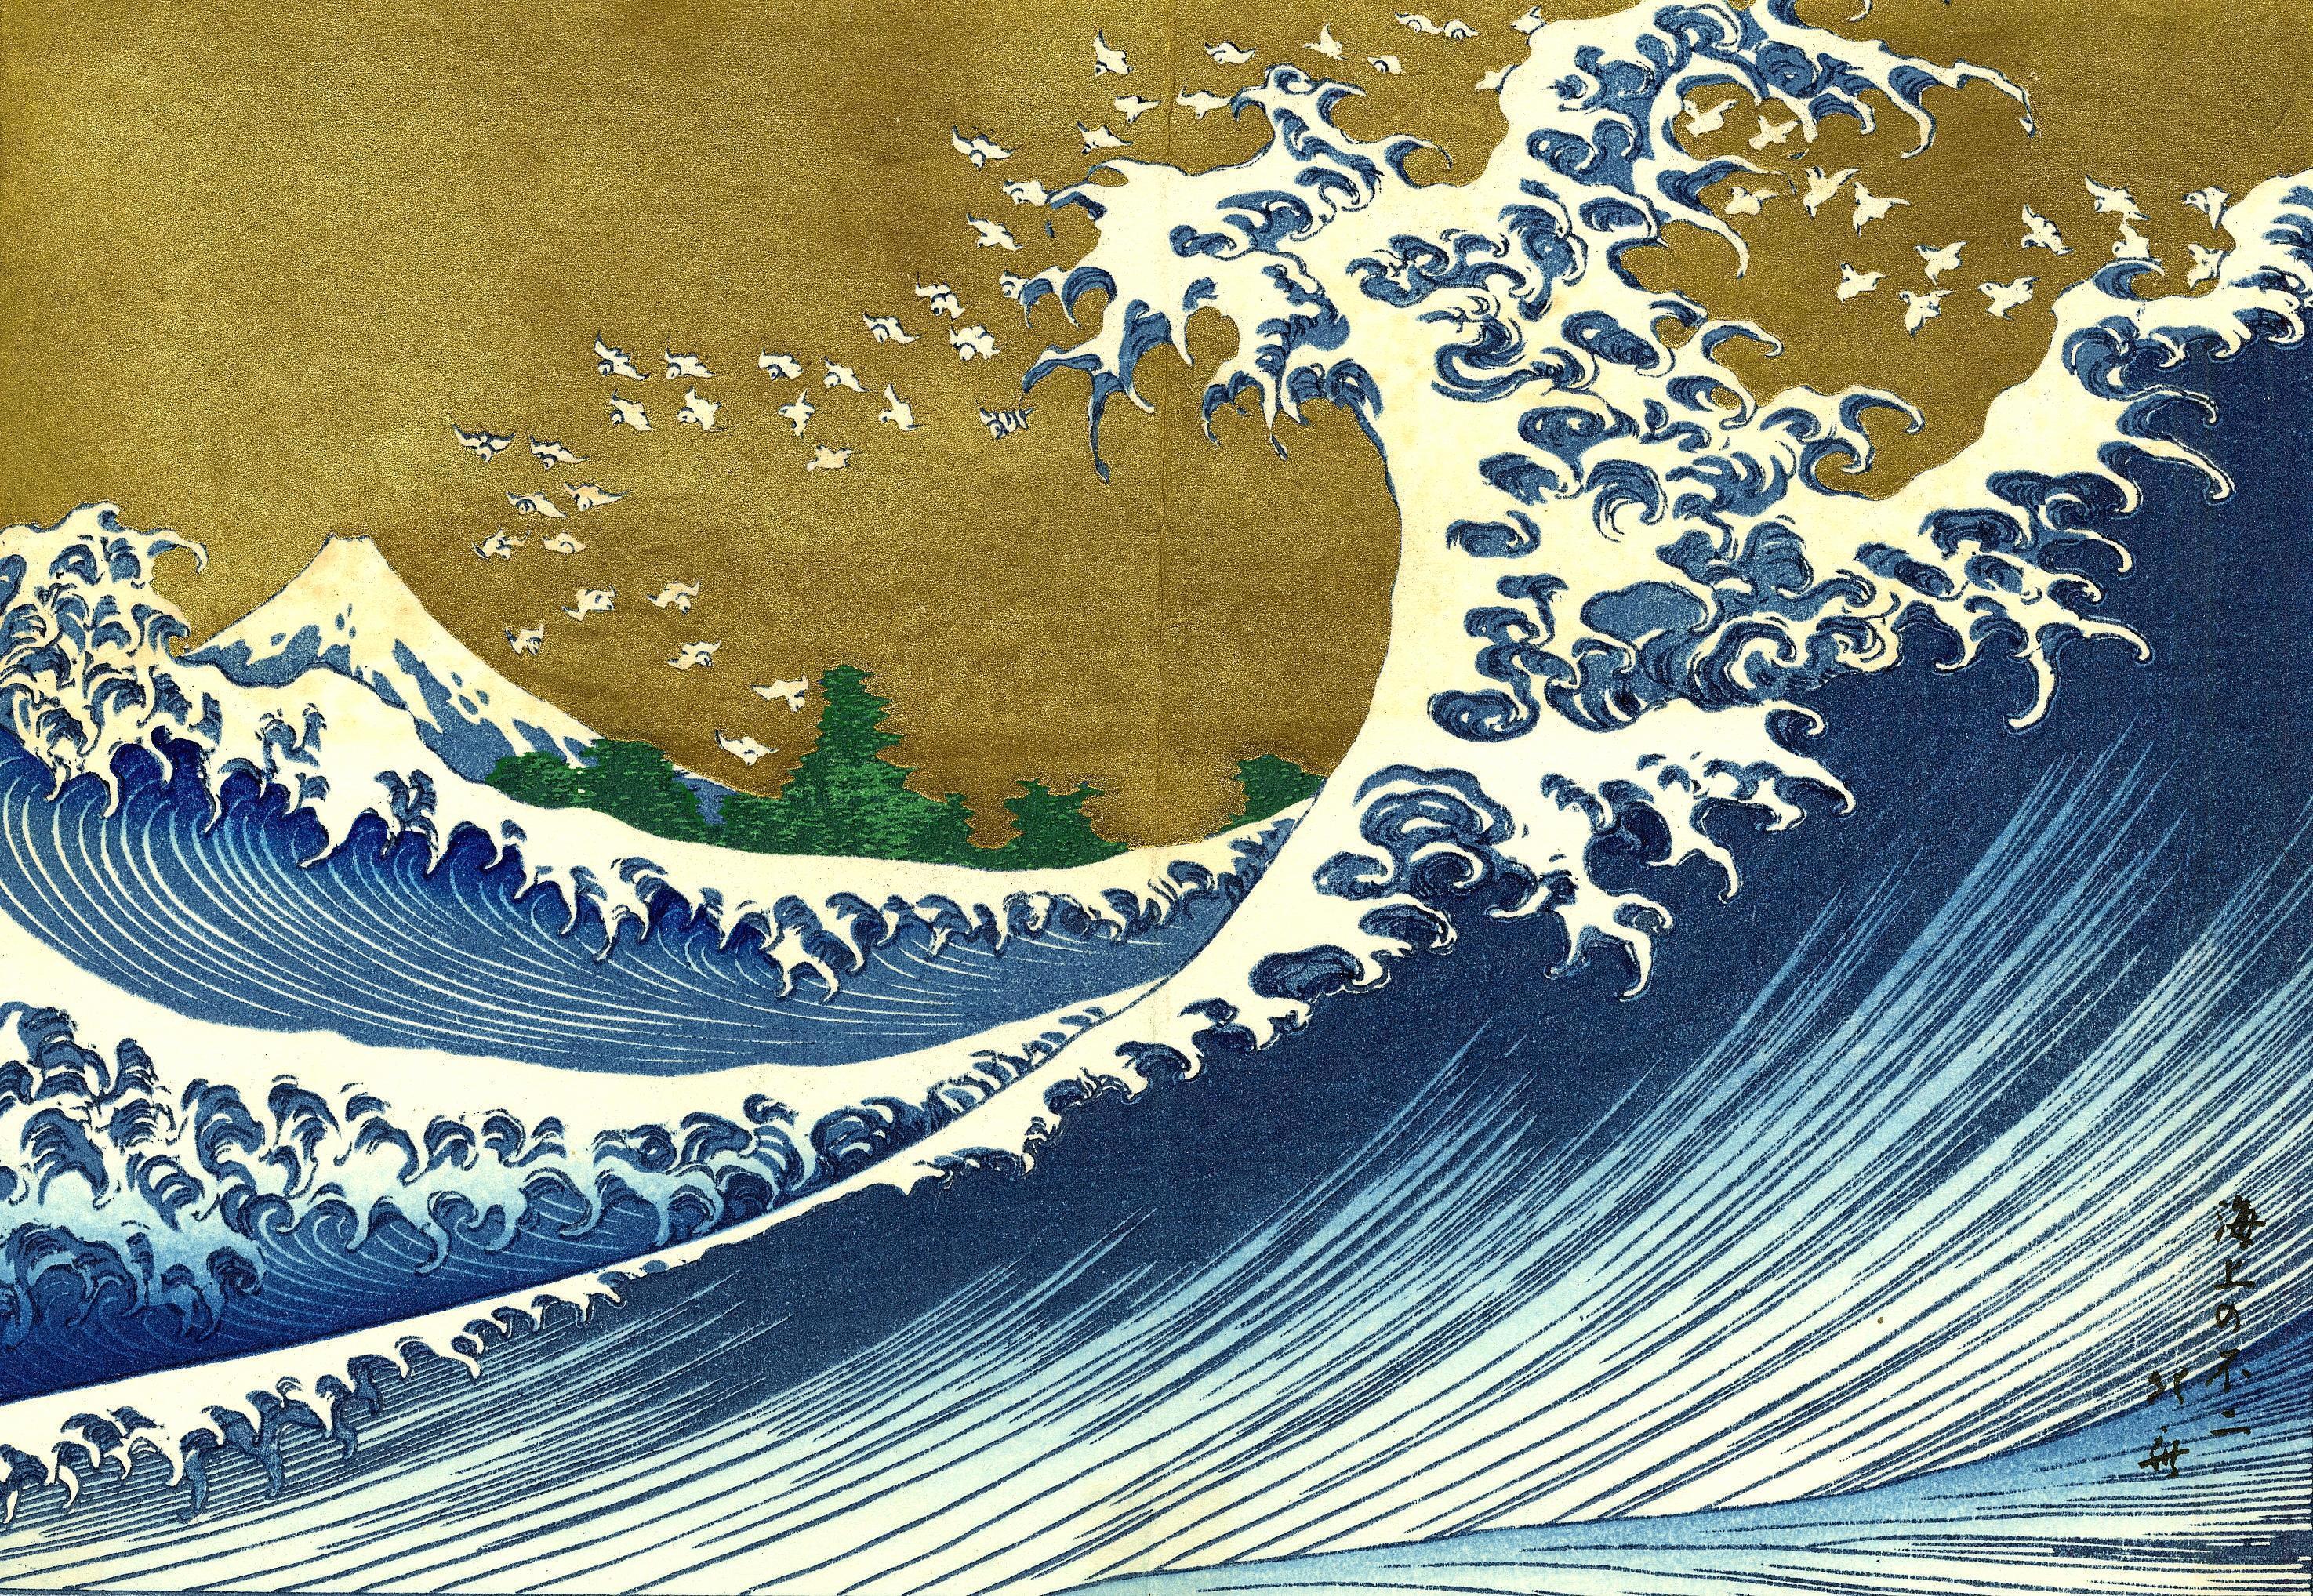 tsunami, The Great Wave off Kanagawa, Katsushika Hokusai